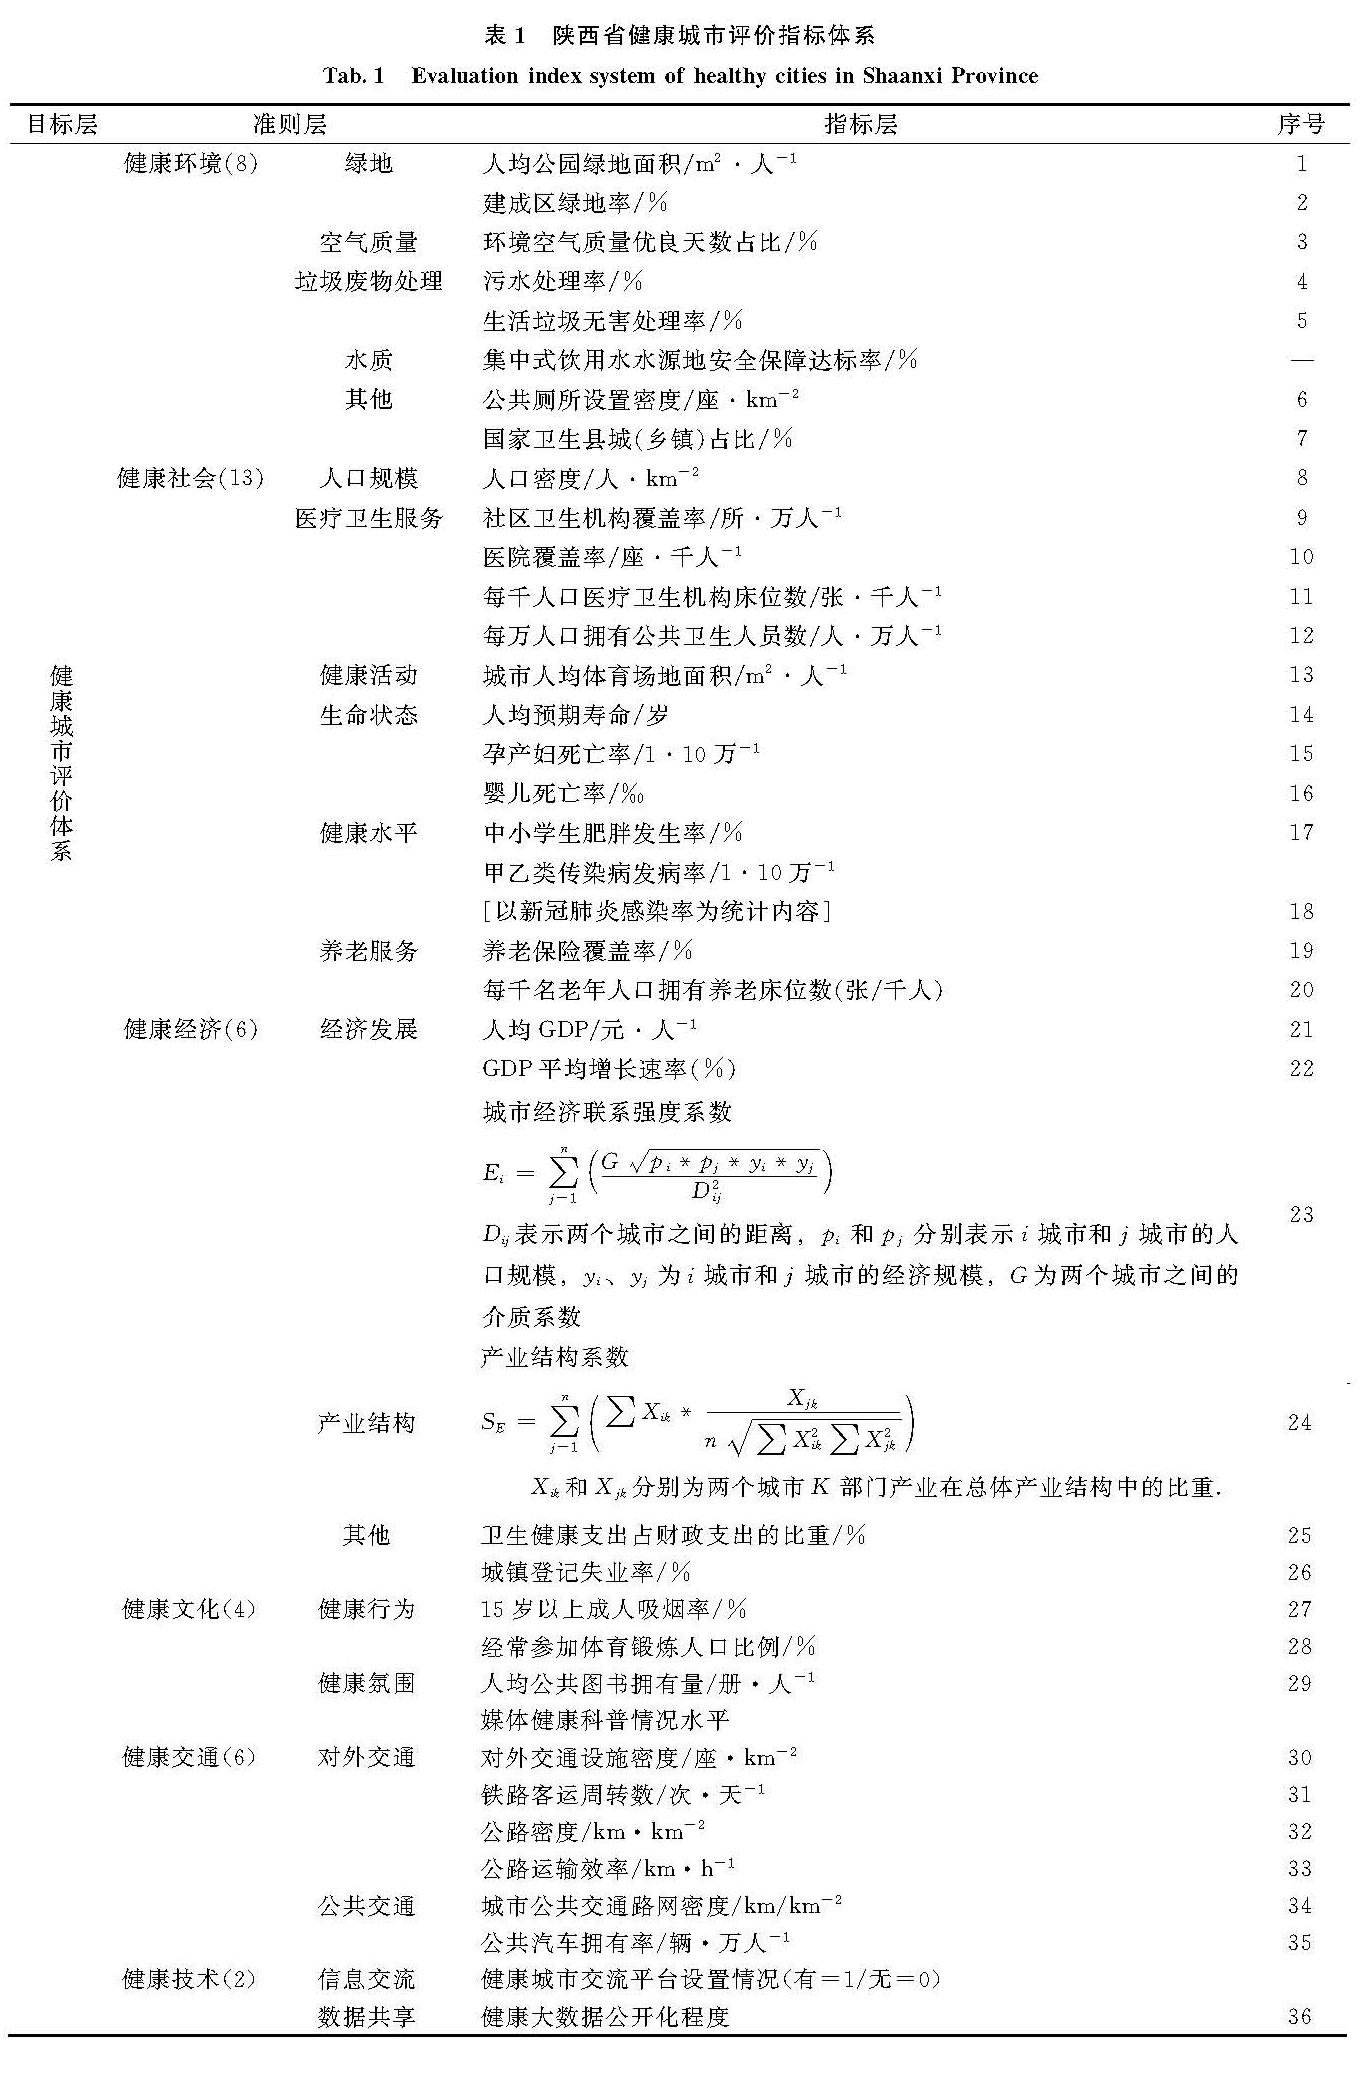 表1 陕西省健康城市评价指标体系<br/>Tab.1 Evaluation index system of healthy cities in Shaanxi Province